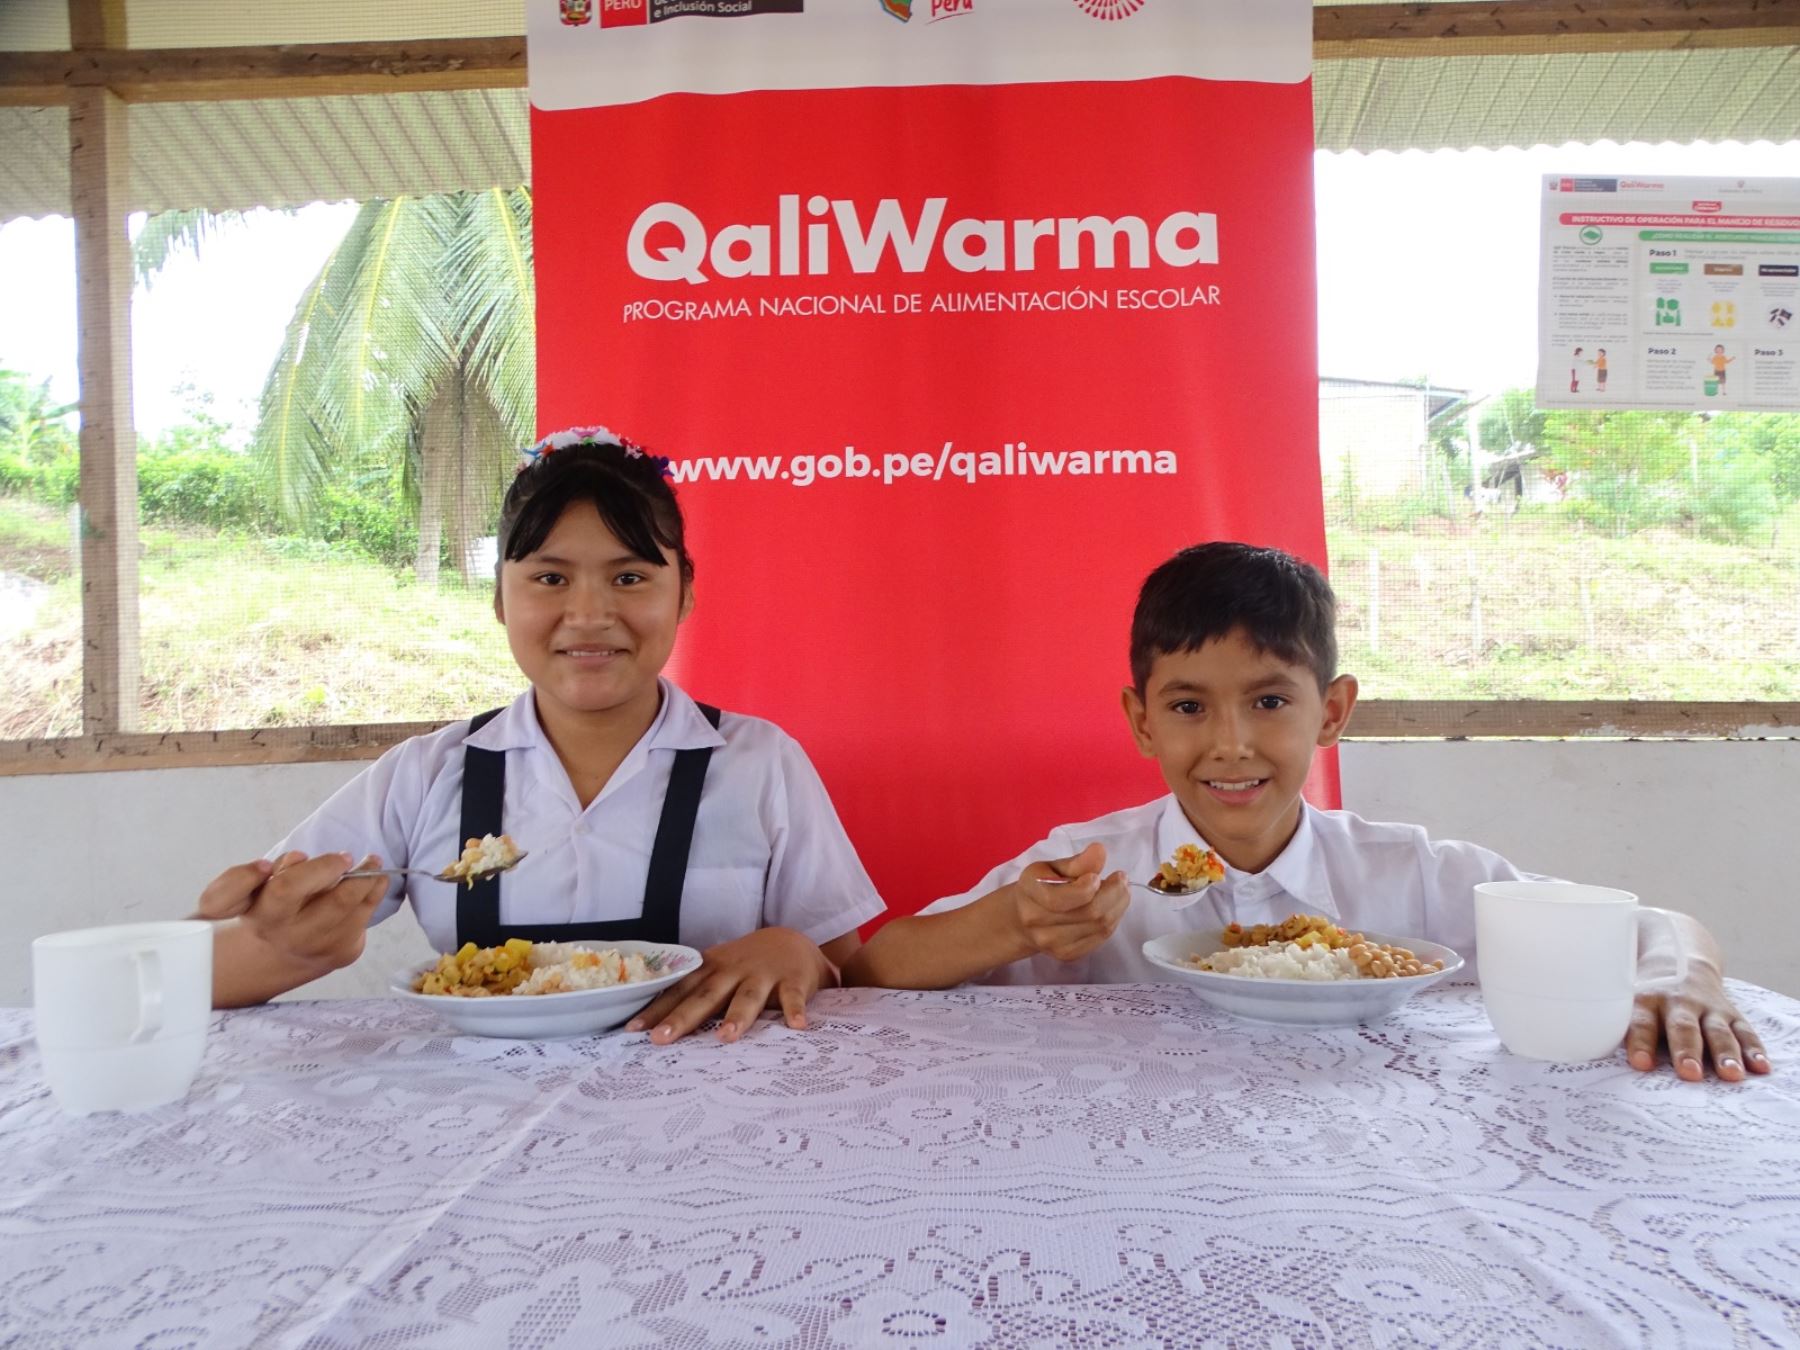 el modelo operacional de Qali Warma comprende las etapas de la planificación del menú escolar, el proceso de compras y la gestión del servicio alimentario escolar. Foto: Cortesía